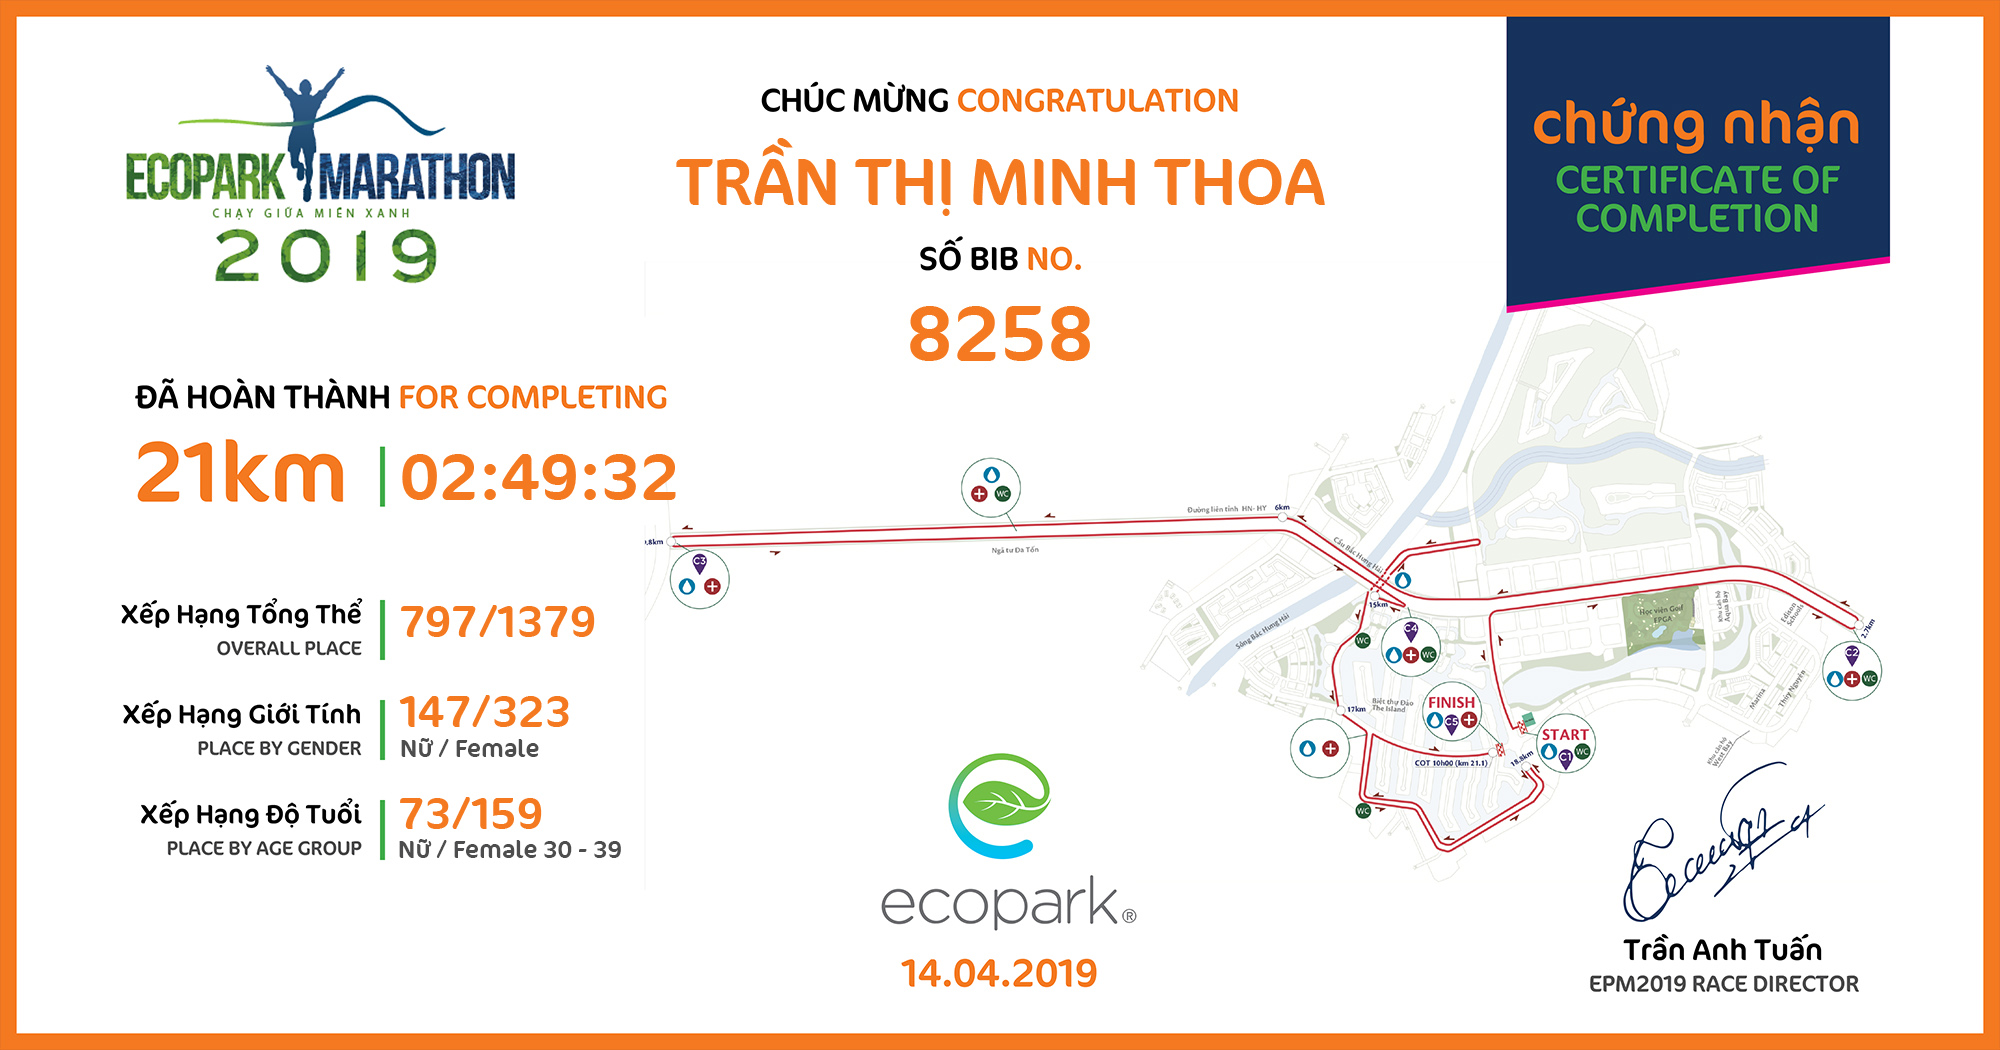 8258 - Trần Thị Minh Thoa